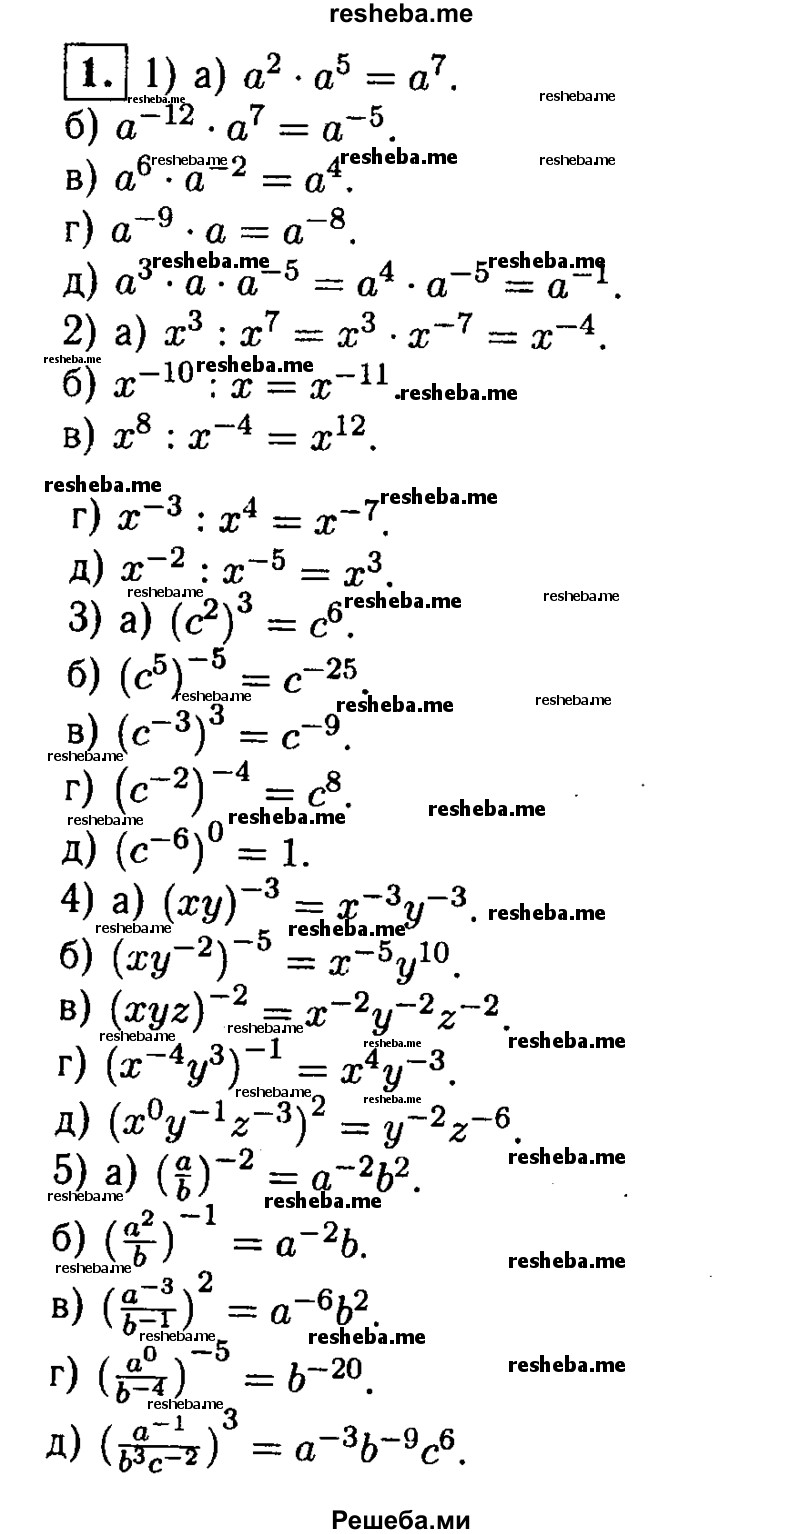 
    1. Преобразуйте выражение:
1) а) а^2 * а^5; 
б) а^12*а^7; 
в) а^6 * а^2;
г) а^-9 *а; 
д) а^3 * а * а^-5;
2) а) х^3 : х^7; 
б) х^-10 : х; 
в) х^8 : х^-4; 
г) х^-3 : х^4; 
д) х^-2 : х^-5;
3) а) (с^2)^3; 
б) (с^5)^-5;
в) (с^-3)^3; 
г) (с^-2)^-4;
д) (с^-6)^0;
4) а) (ху)^-3; 
б) (ху^-2)^5; 
в) (хуz)^-2; 
г) (x^-4у^3);
д) (x^0y^-1z^-3)^2;
5) a) (a/b)^-2;
Б) (a^2/b)-1;
В) (a^-3 / b^-1)^2;
Г) (a^0 / b^-4)^-5;
Д) (a^-1 / b^3c^-2)^3.
